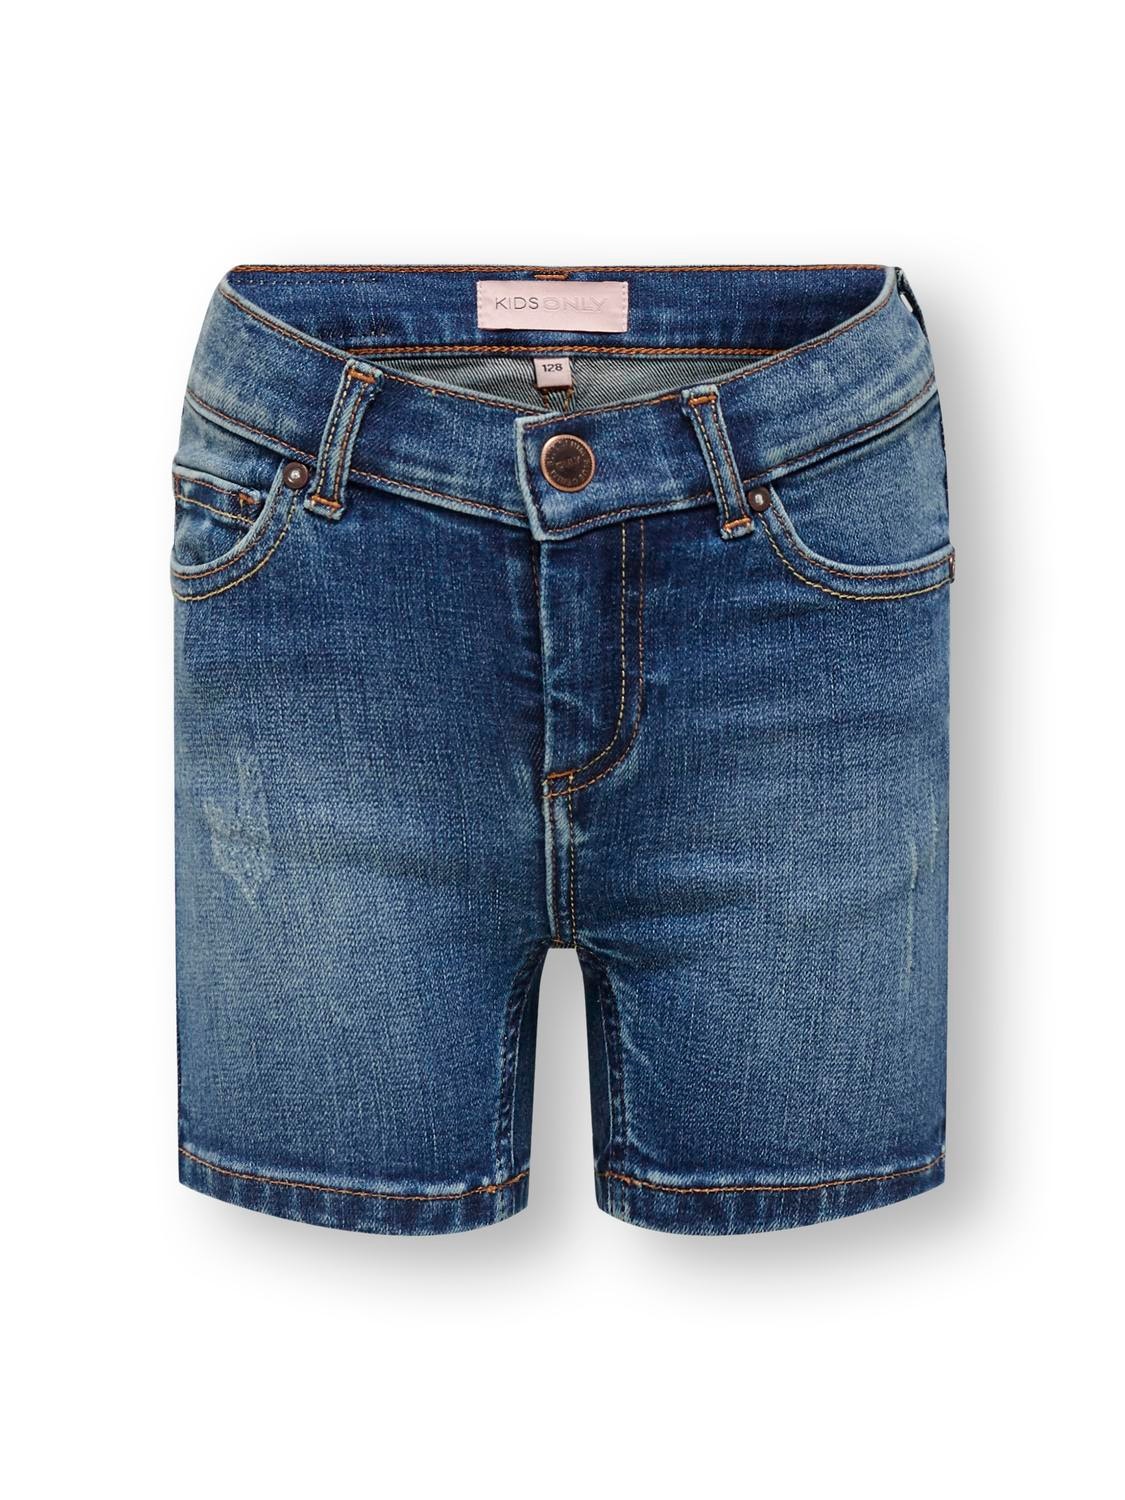 ONLY Shorts Skinny Fit -Medium Blue Denim - 15201450